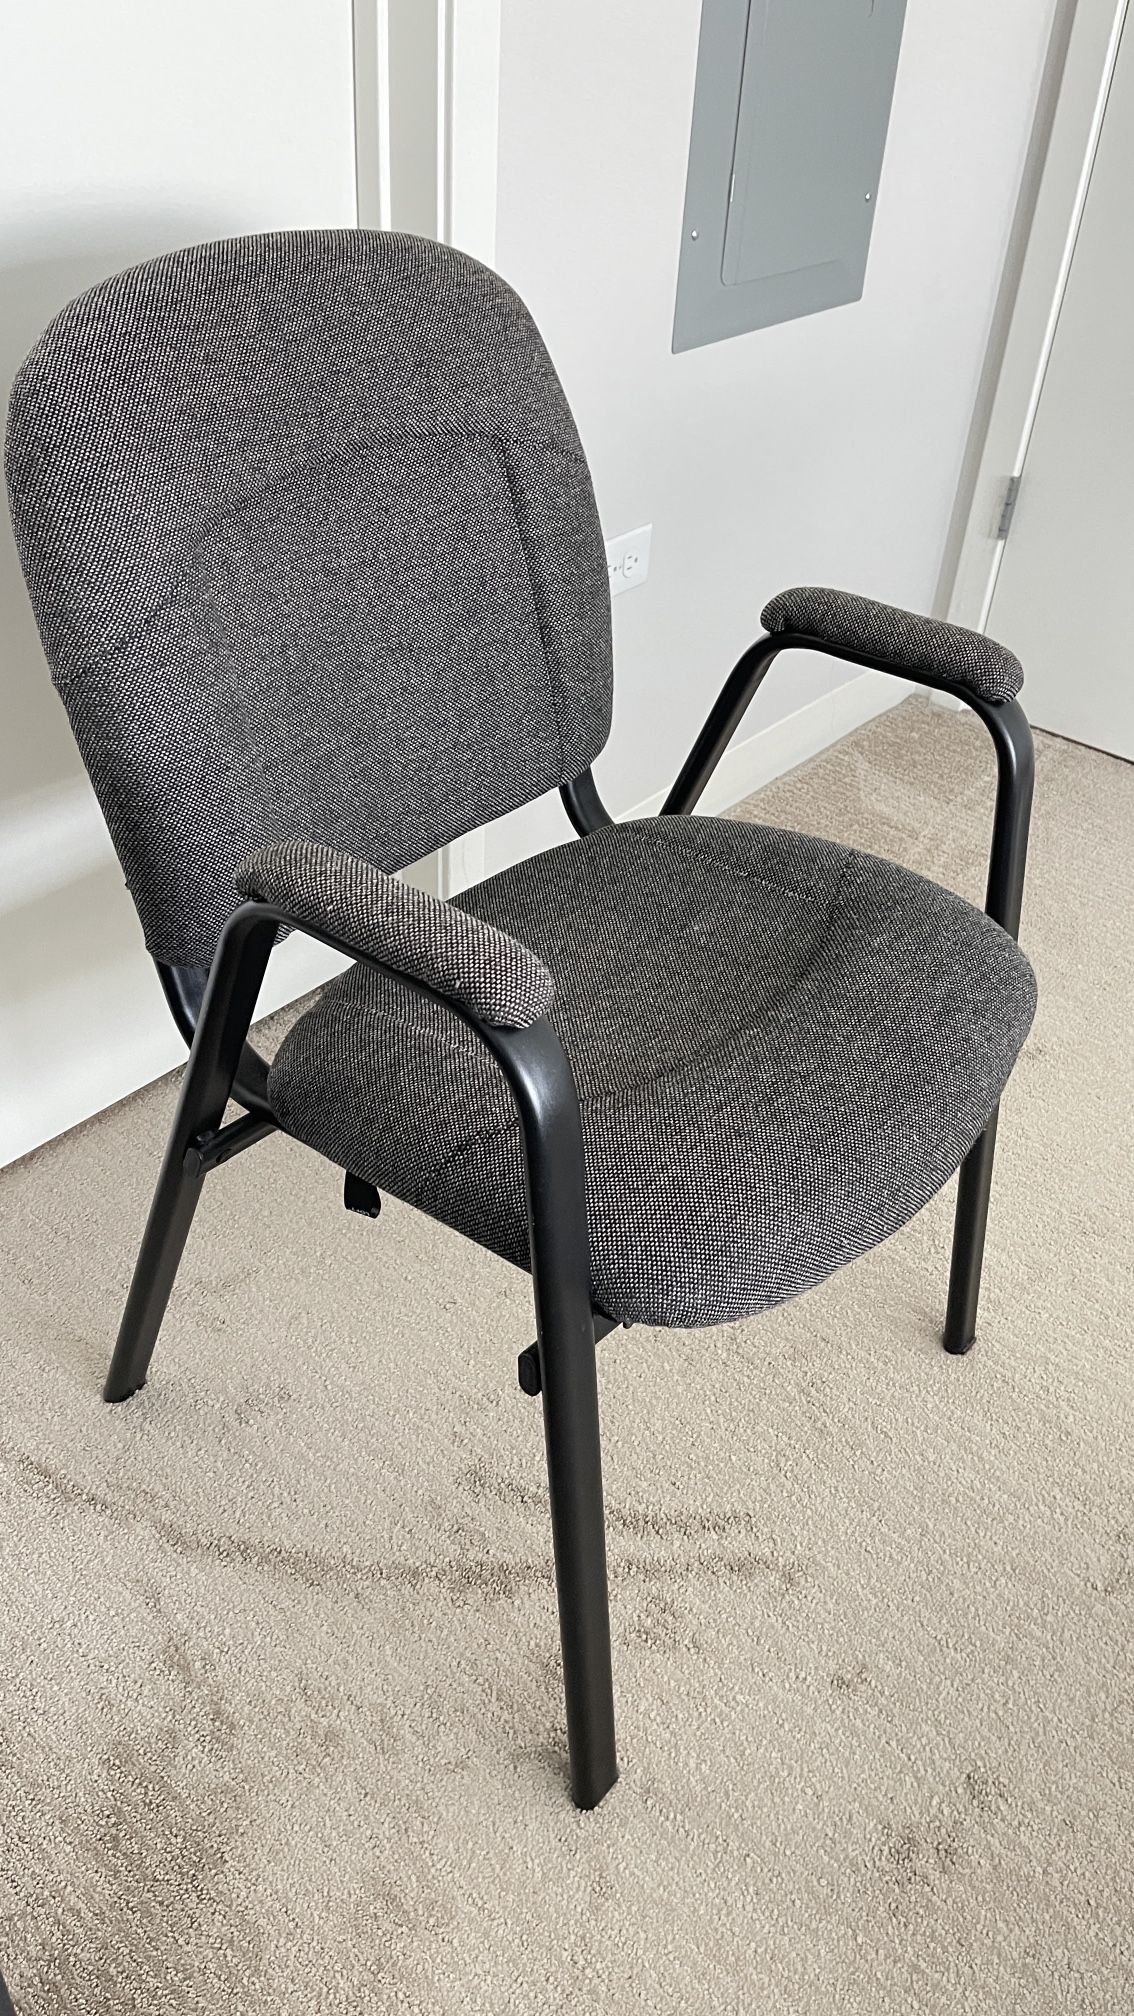 Cushion chair - metal